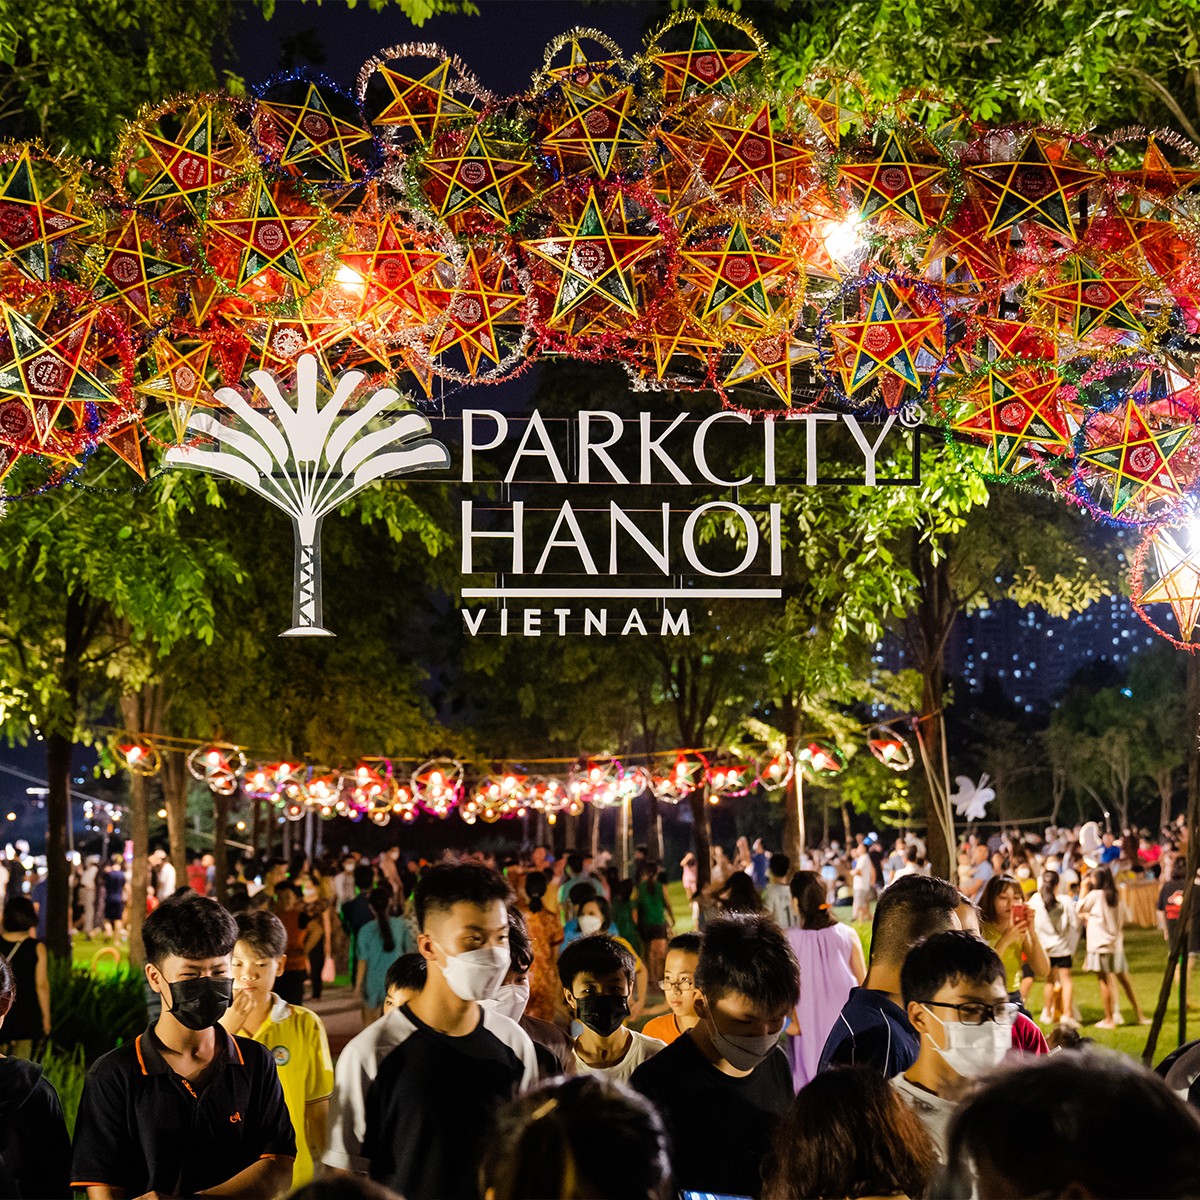 Giới trẻ háo hức chờ đợi “Lễ hội Trung thu trên mây” tại ParkCity Hanoi - Ảnh 1.